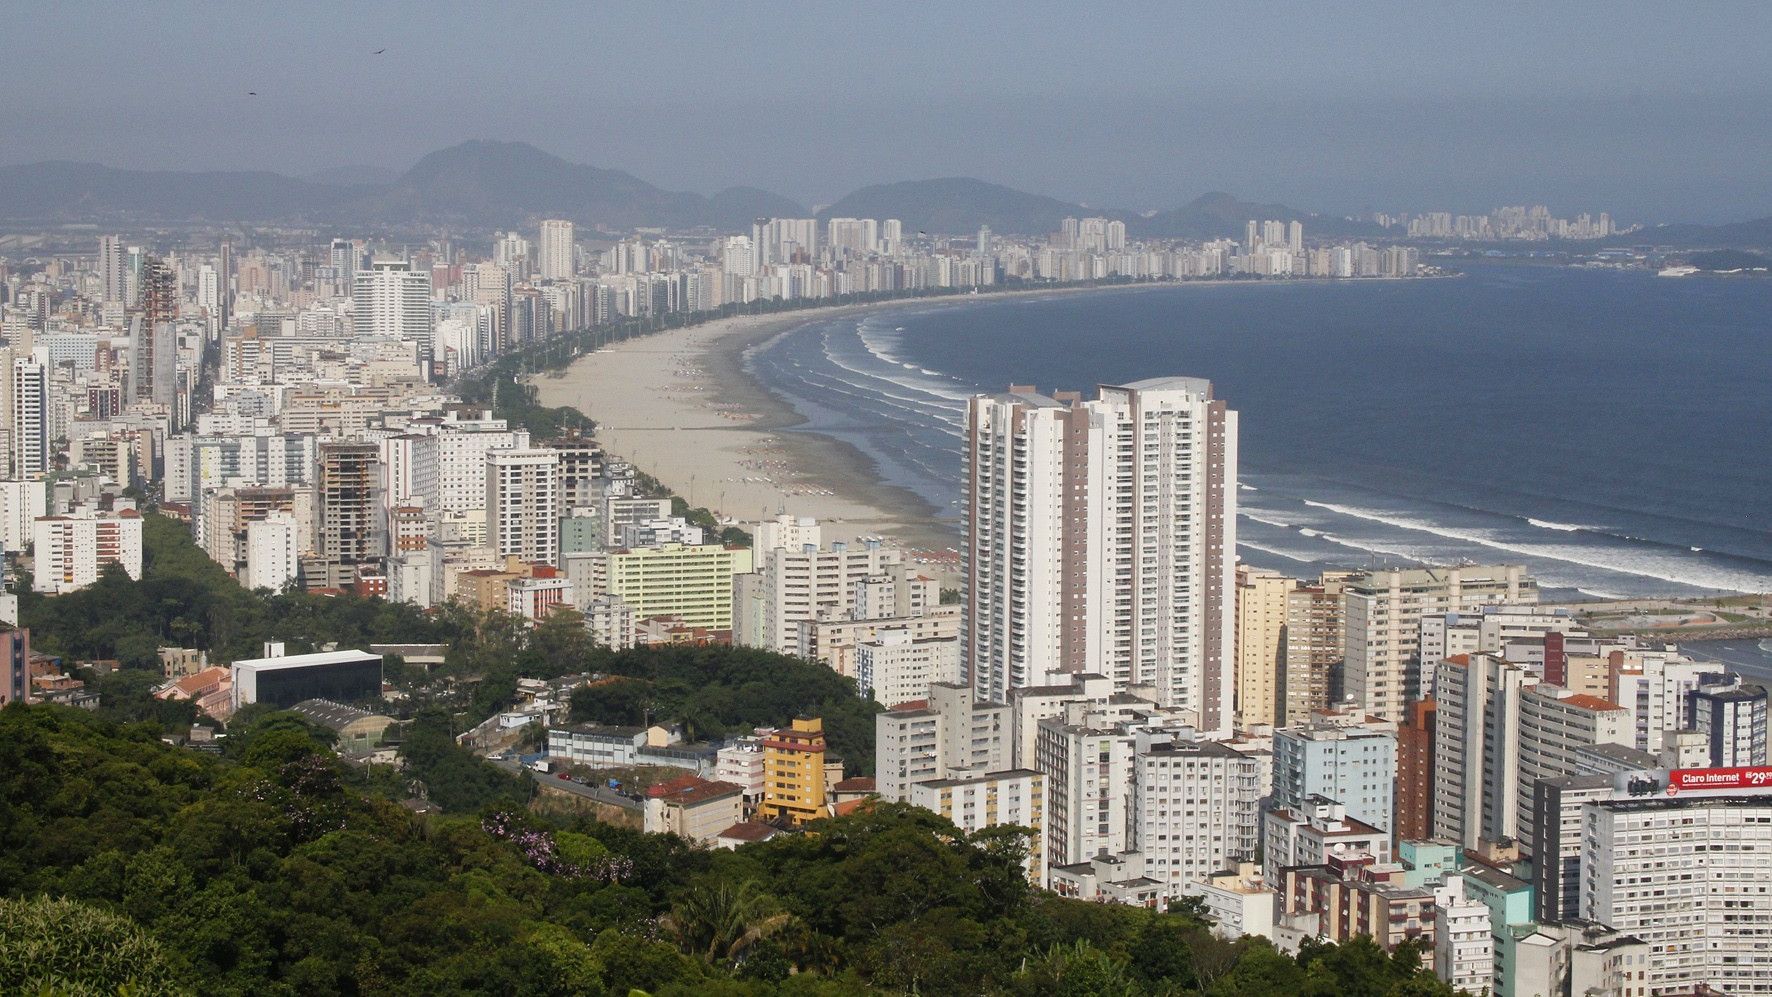 Vista aérea de prédios em praia